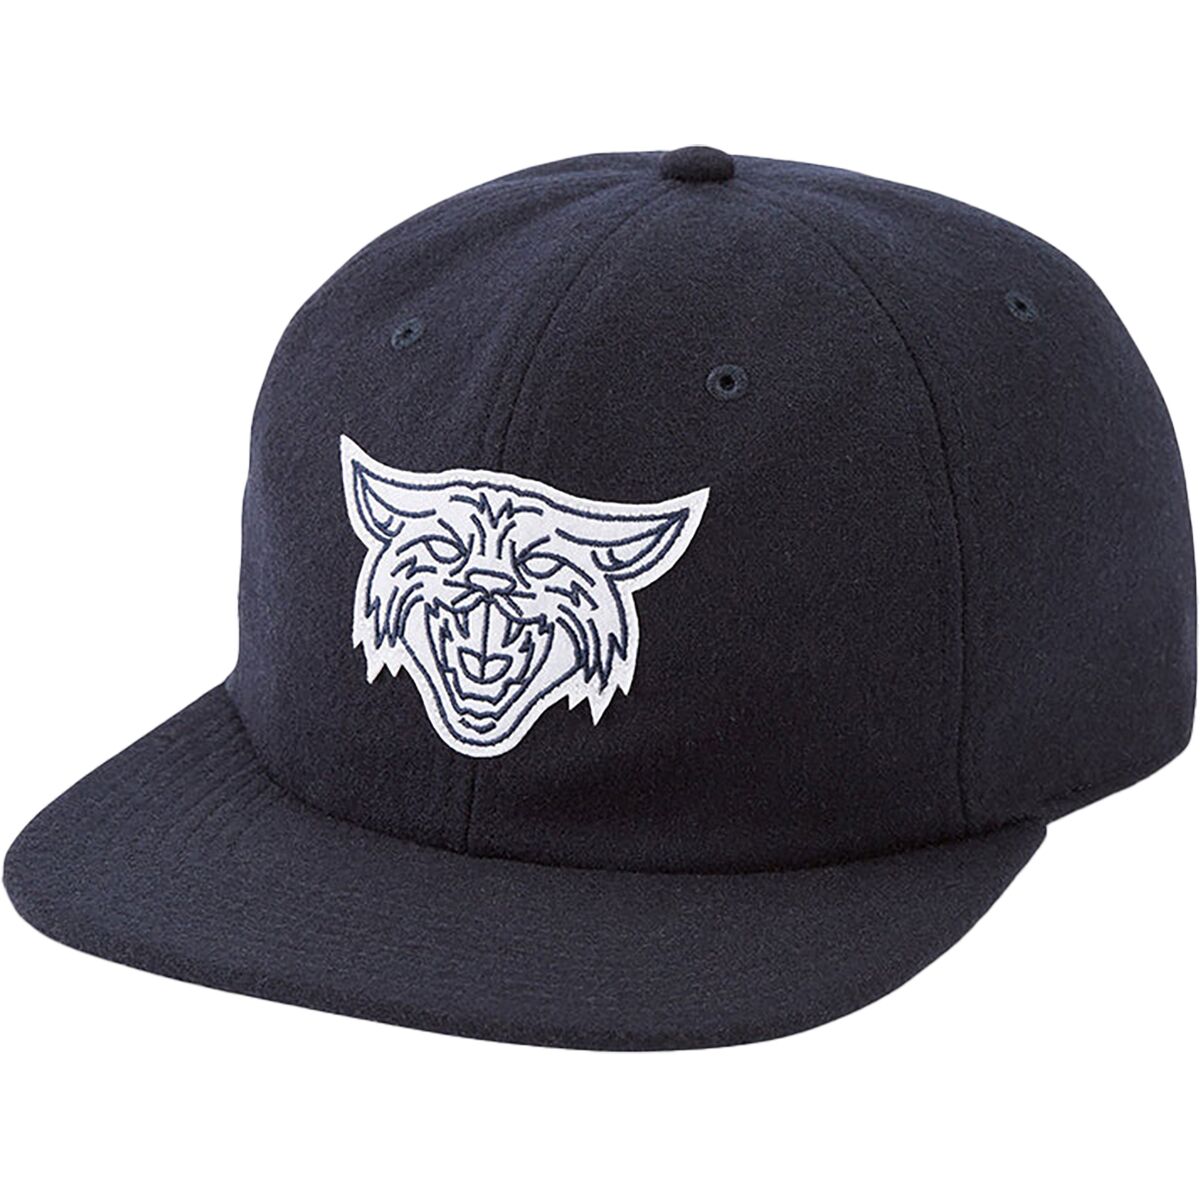 DAKINE Wildcat Snapback Hat